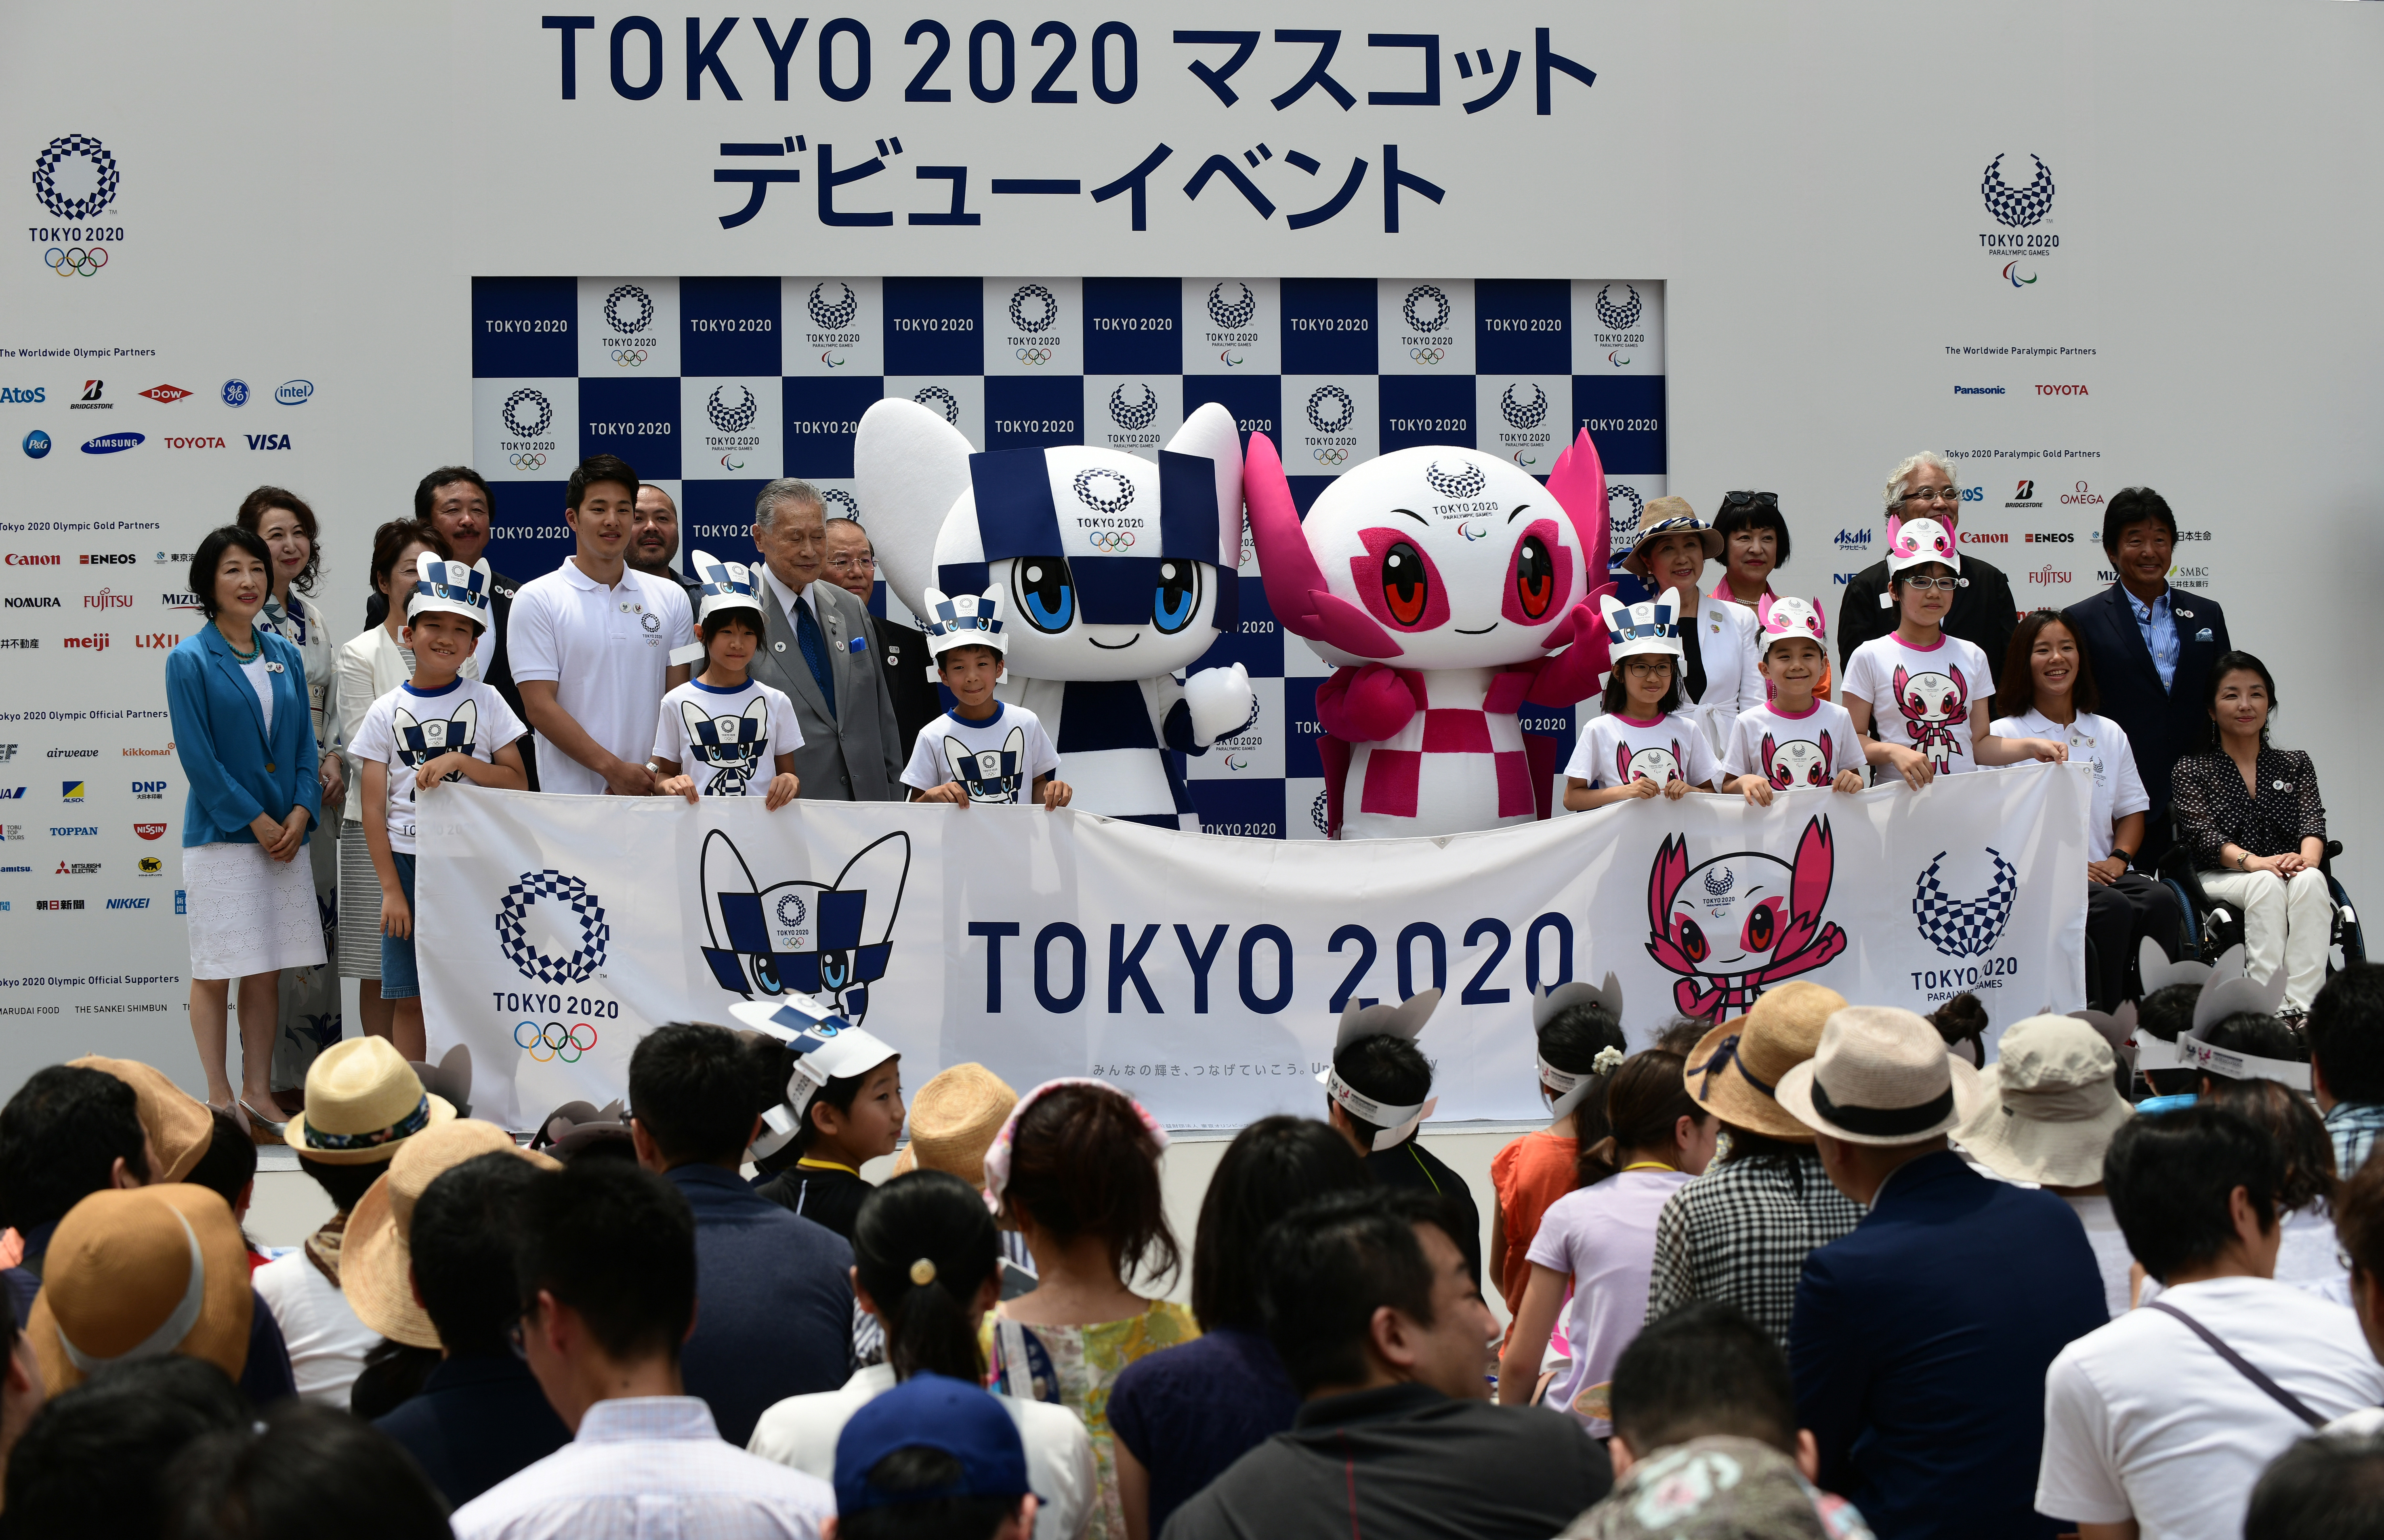 tokyo 2020 olympics